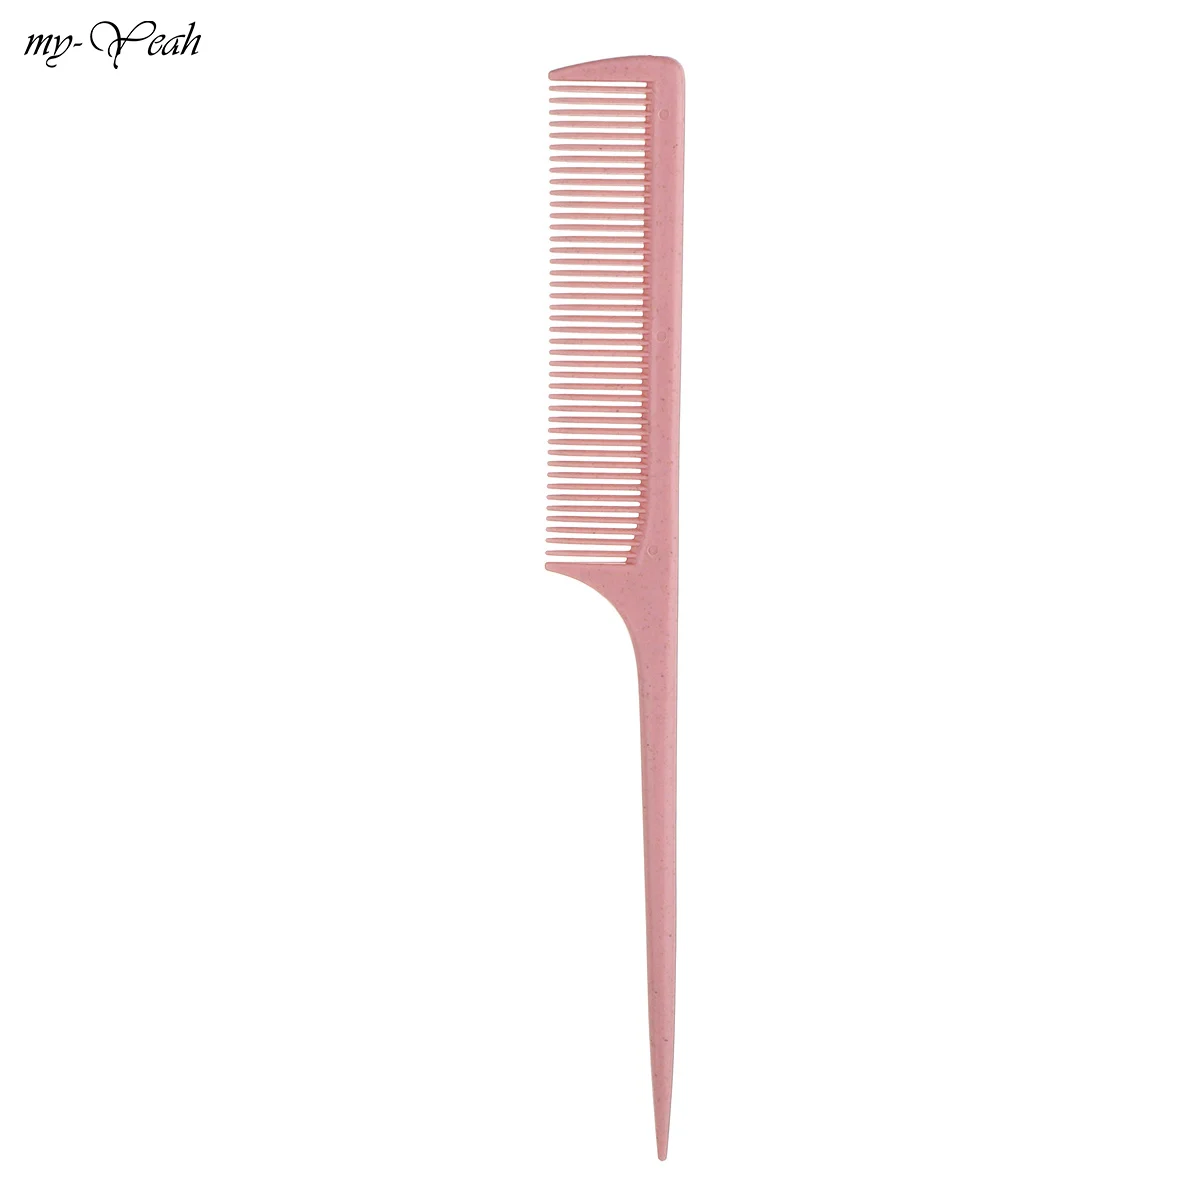 2 шт./компл. Анти-статический парикмахерские широкие/тонкой зуб расчески для салона для стрижки волос Detangling парикмахерские щетки для волос инструмент для укладки волос